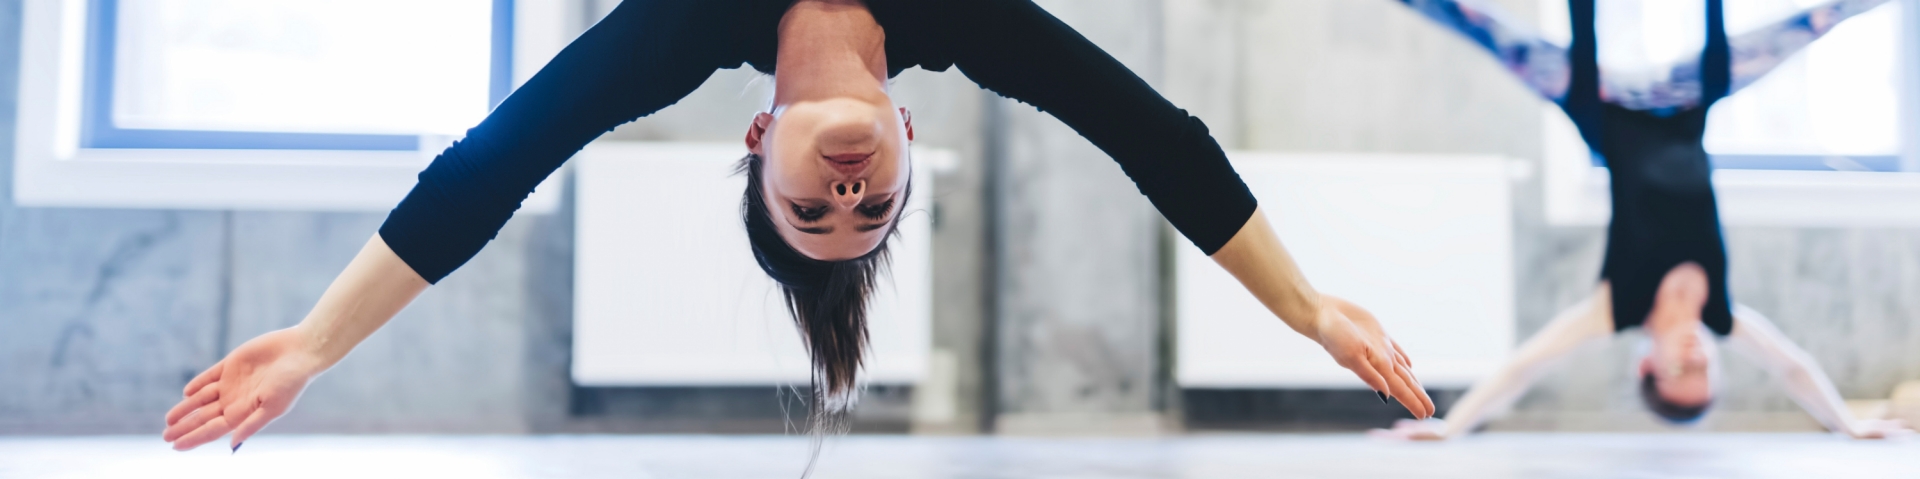 Frau macht eine Kopfstand-Yogaübung, in einem Seil kopfüber hängend